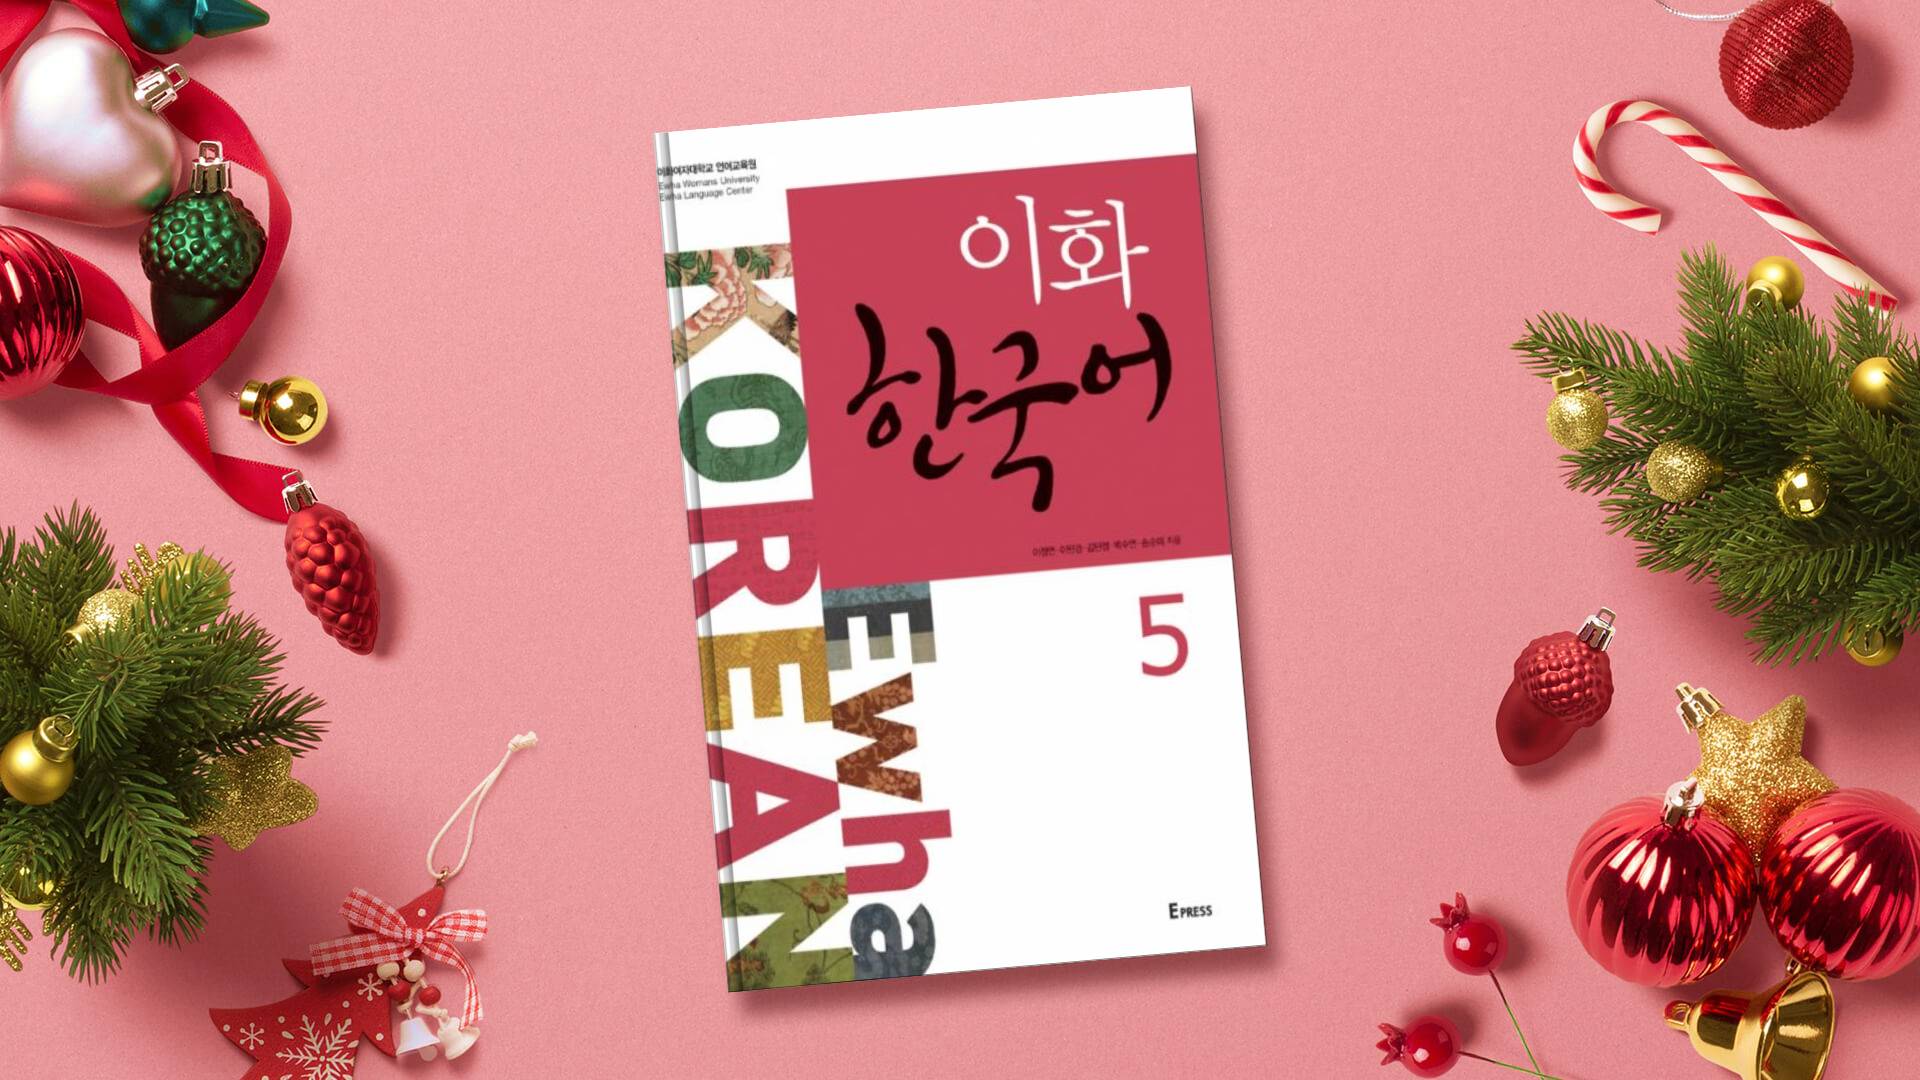 خرید کتاب زبان کره ای | فروشگاه اینترنتی کتاب زبان | Ewha Korean 5 | ایهوا کره ای پنج